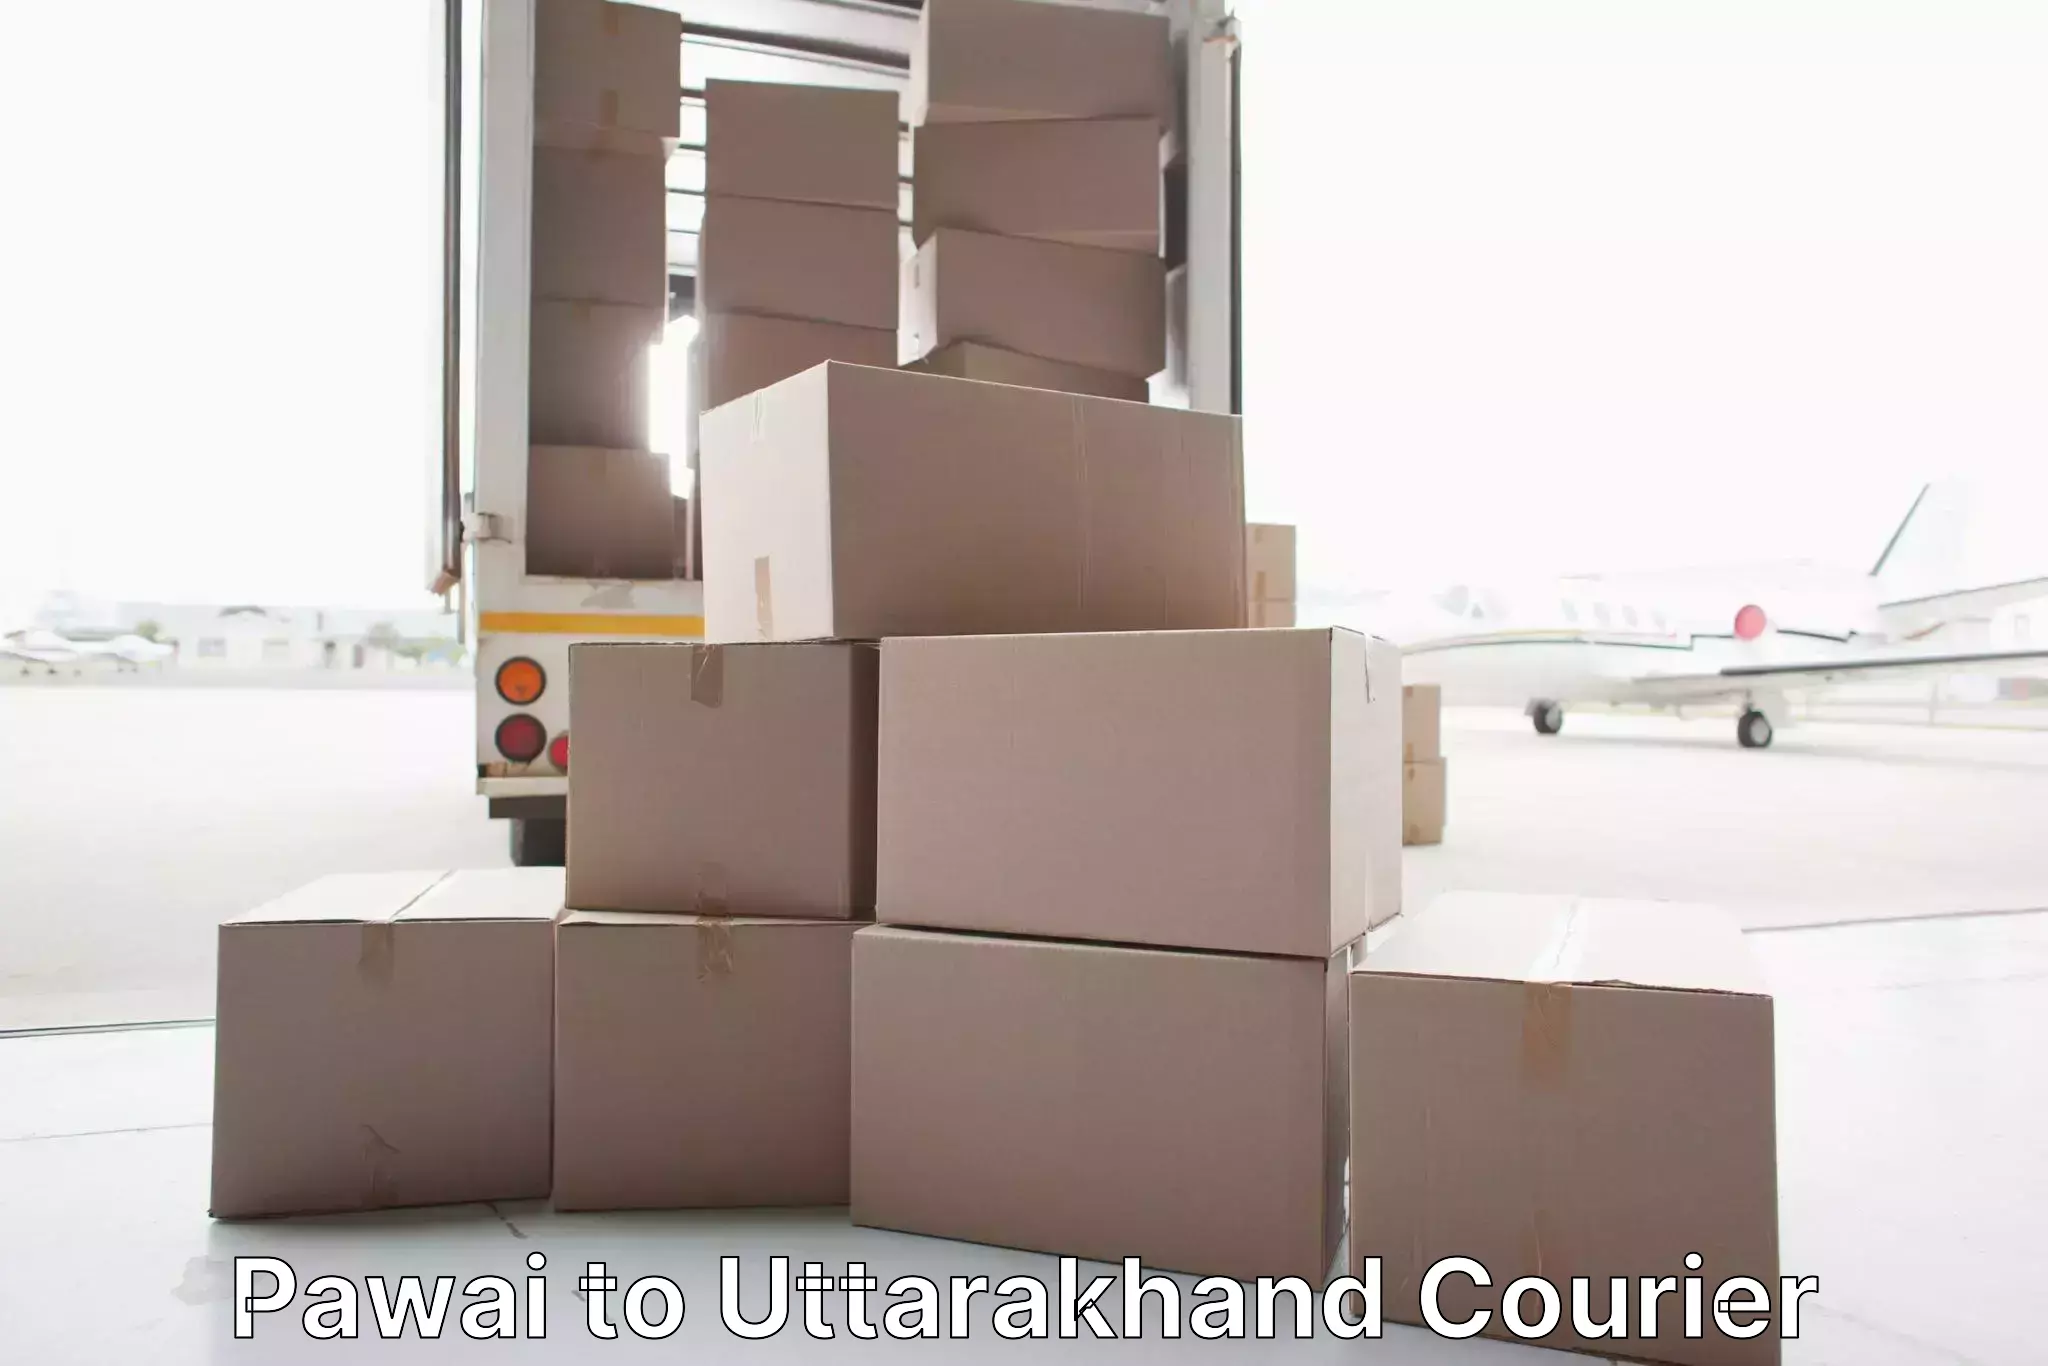 Furniture moving experts Pawai to Uttarakhand